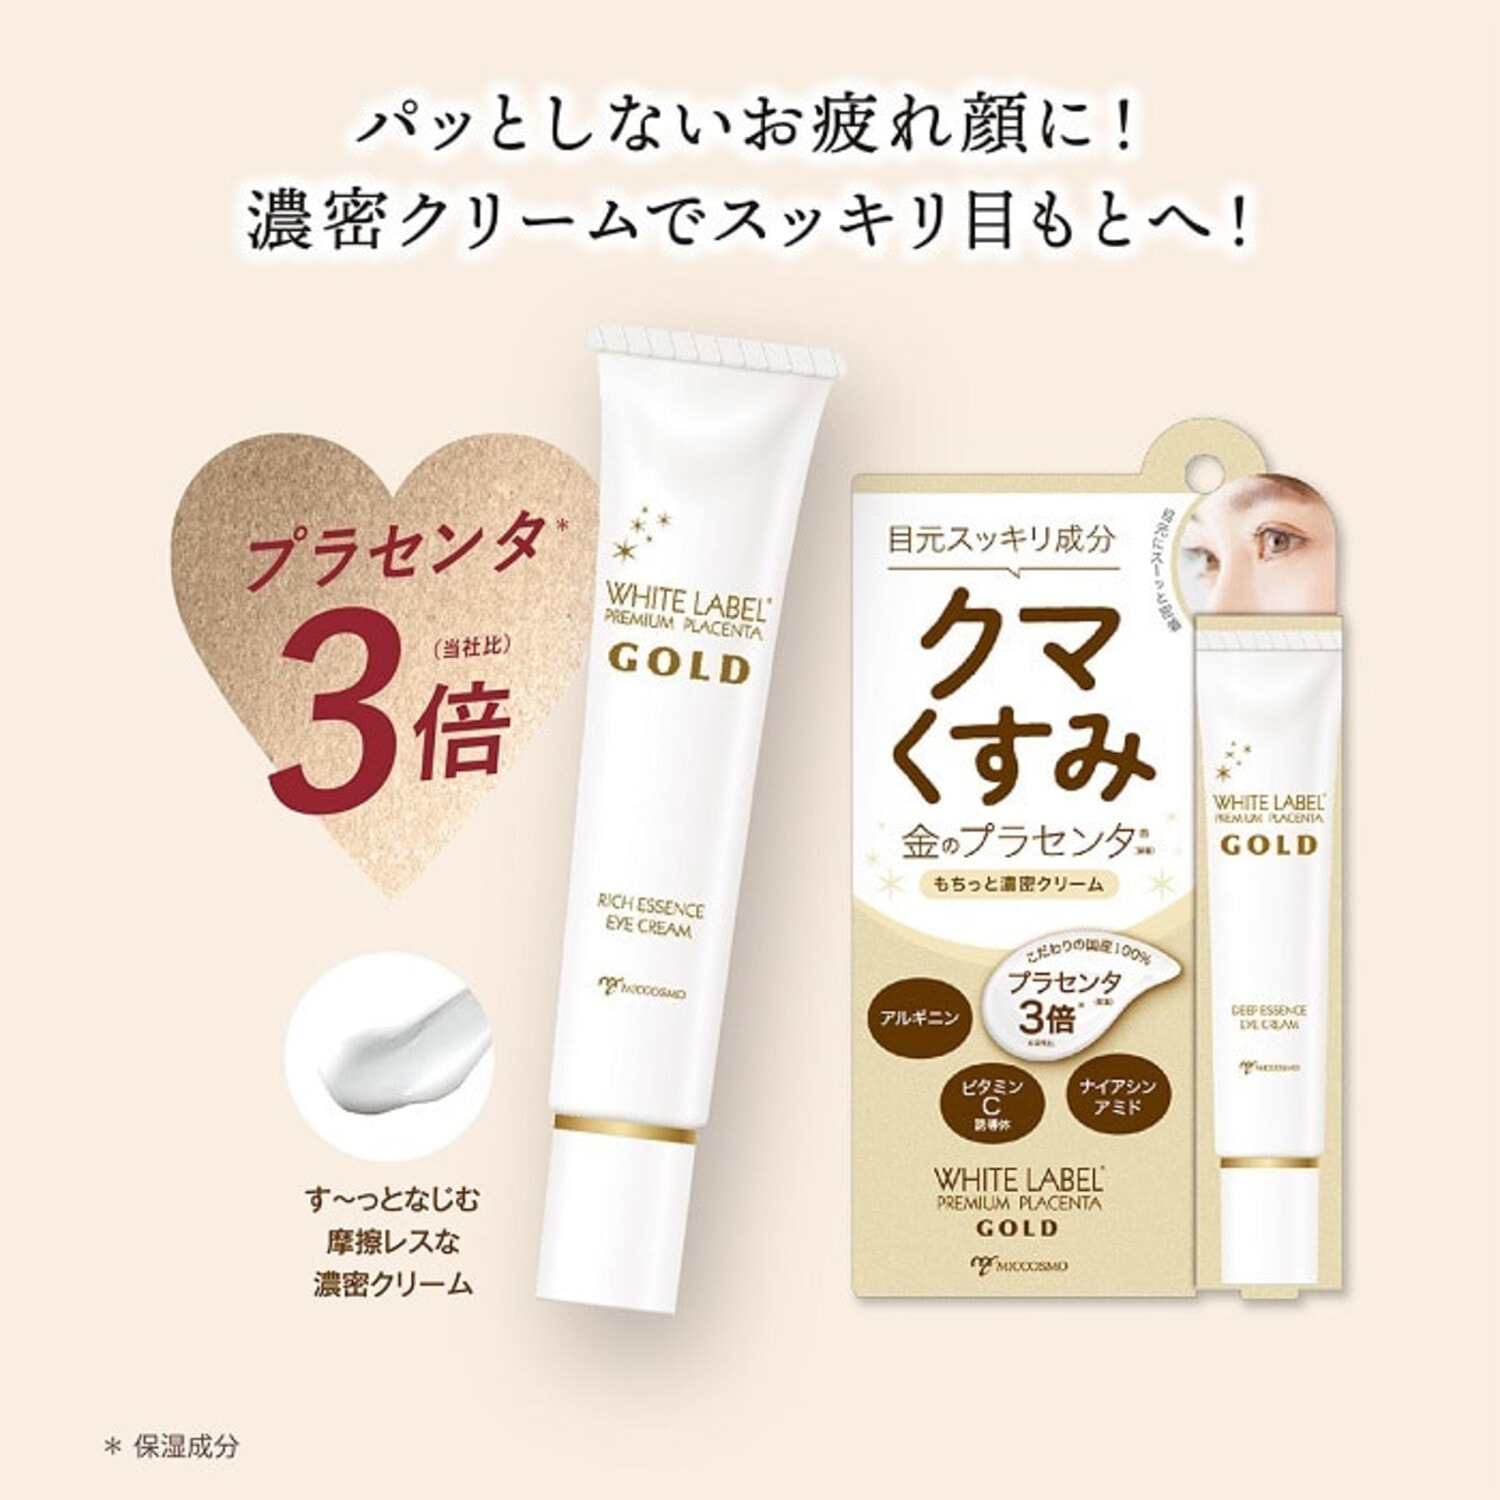 Miccosmo "White Label Premium Placenta Eye Cream" Увлажняющий крем для ухода за кожей вокруг глаз, против темных кругов и тусклости кожи, с экстрактом плаценты, ниацинамидом и витамином С, 25 г. / 686401